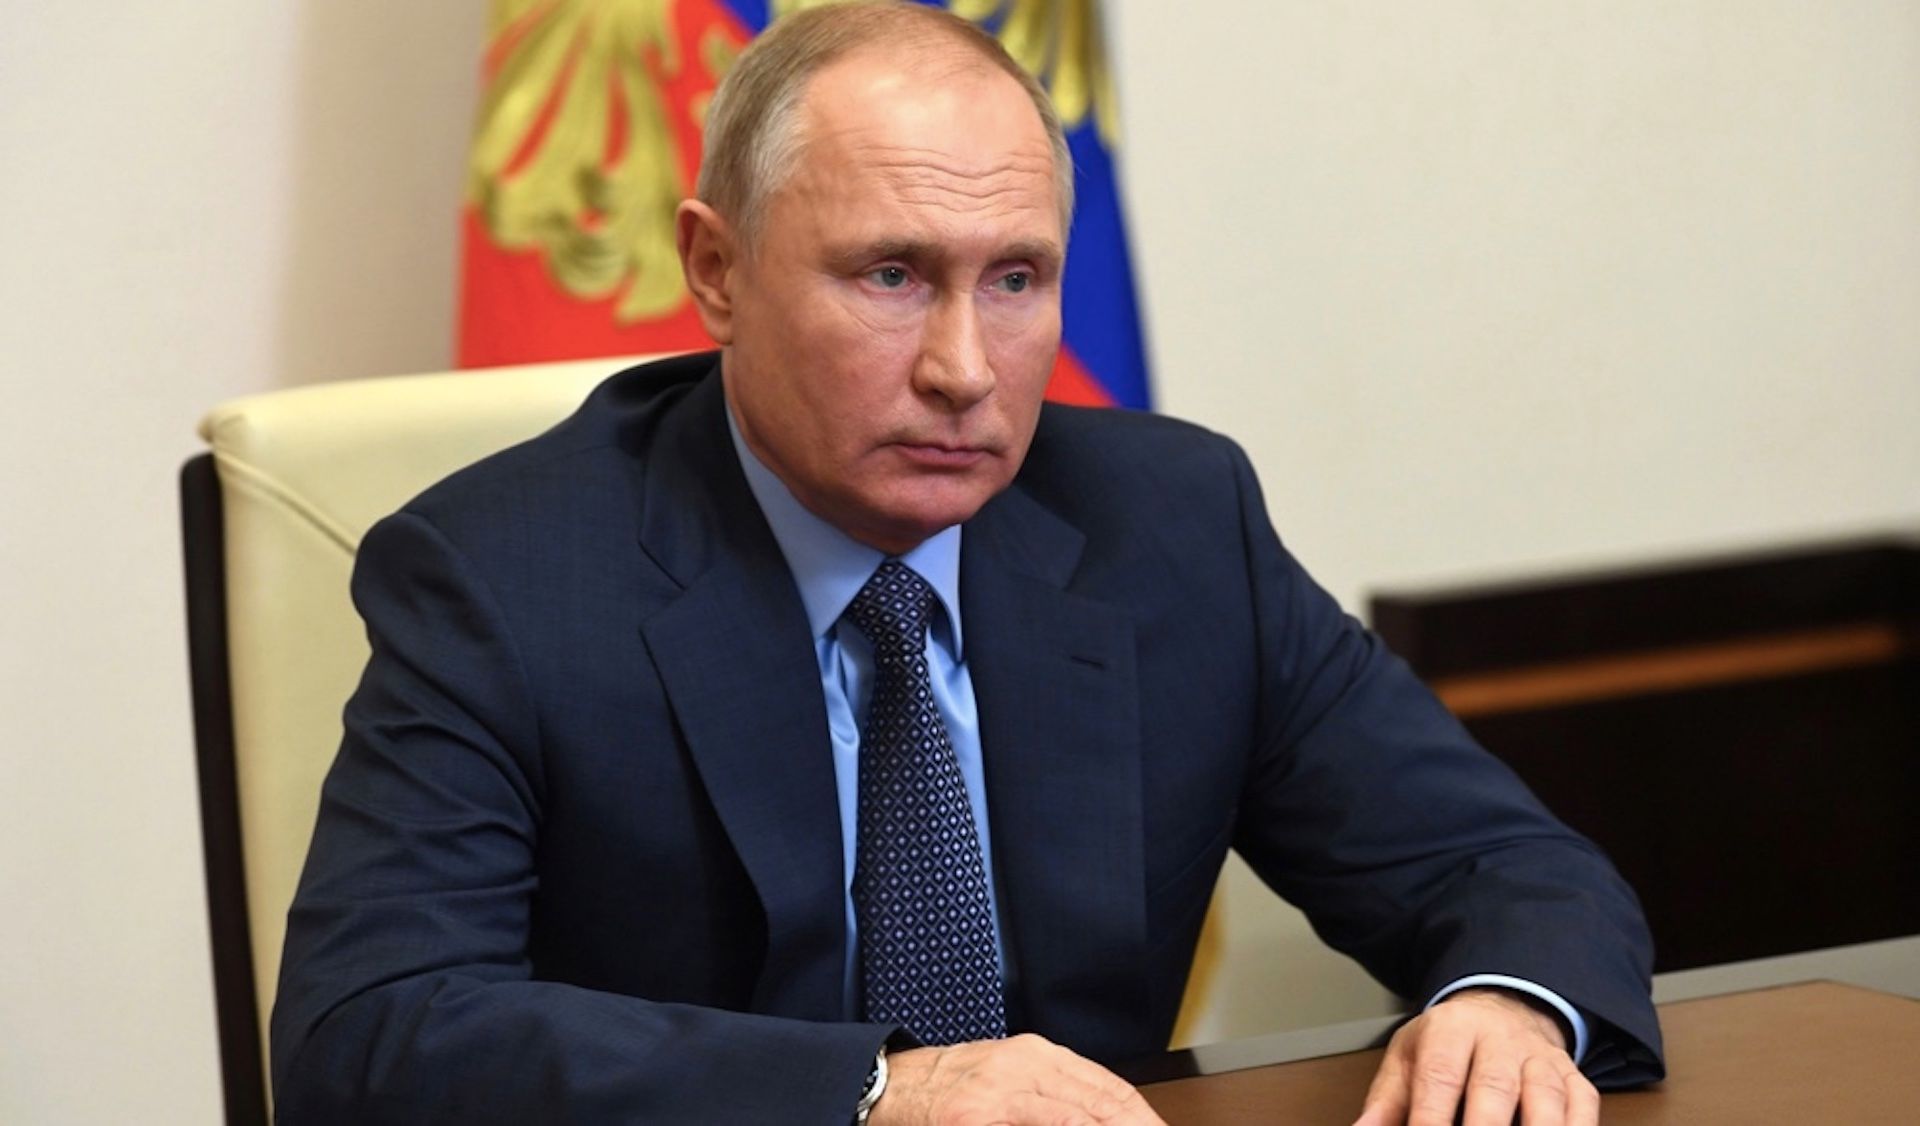 Kraje G7 sprzeciwiły się Władimirowi Putinowi, jego żądania dot. płatności za gaz w rublach zostały odrzucone